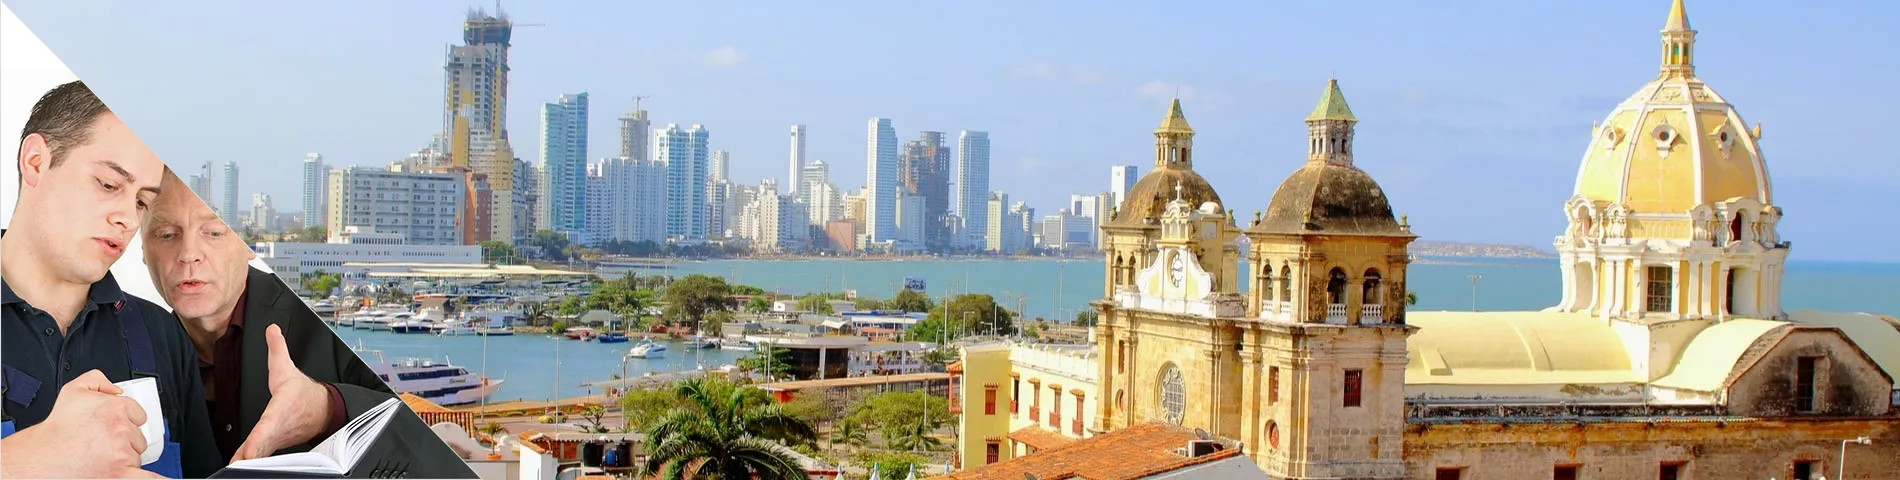 Cartagena - One-to-One